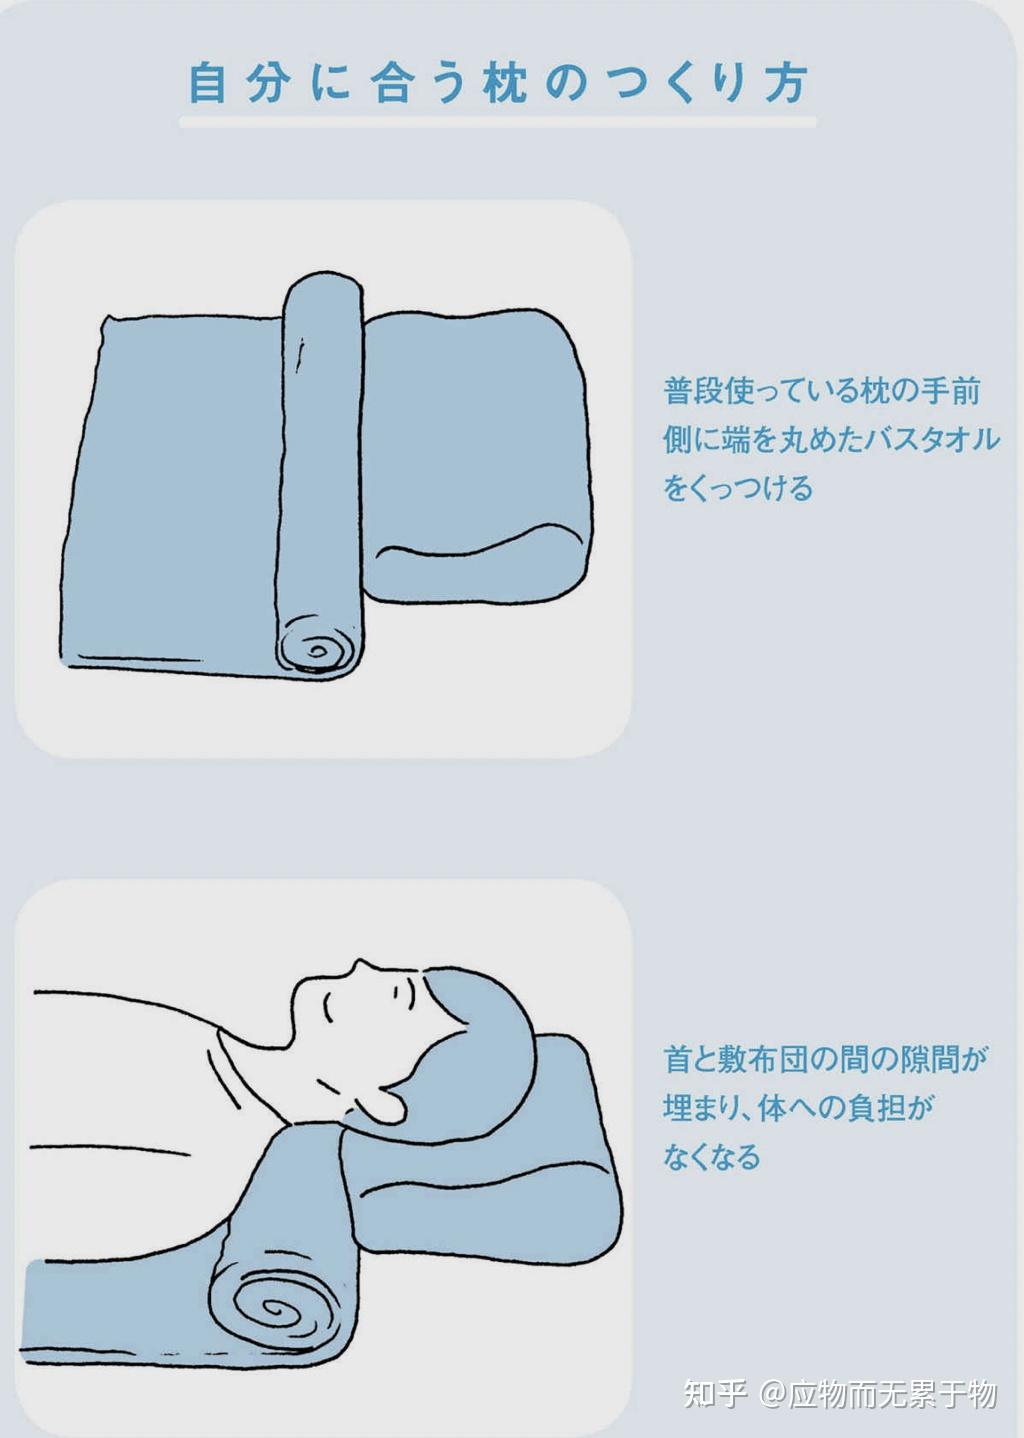 腰枕睡觉的正确垫法图图片